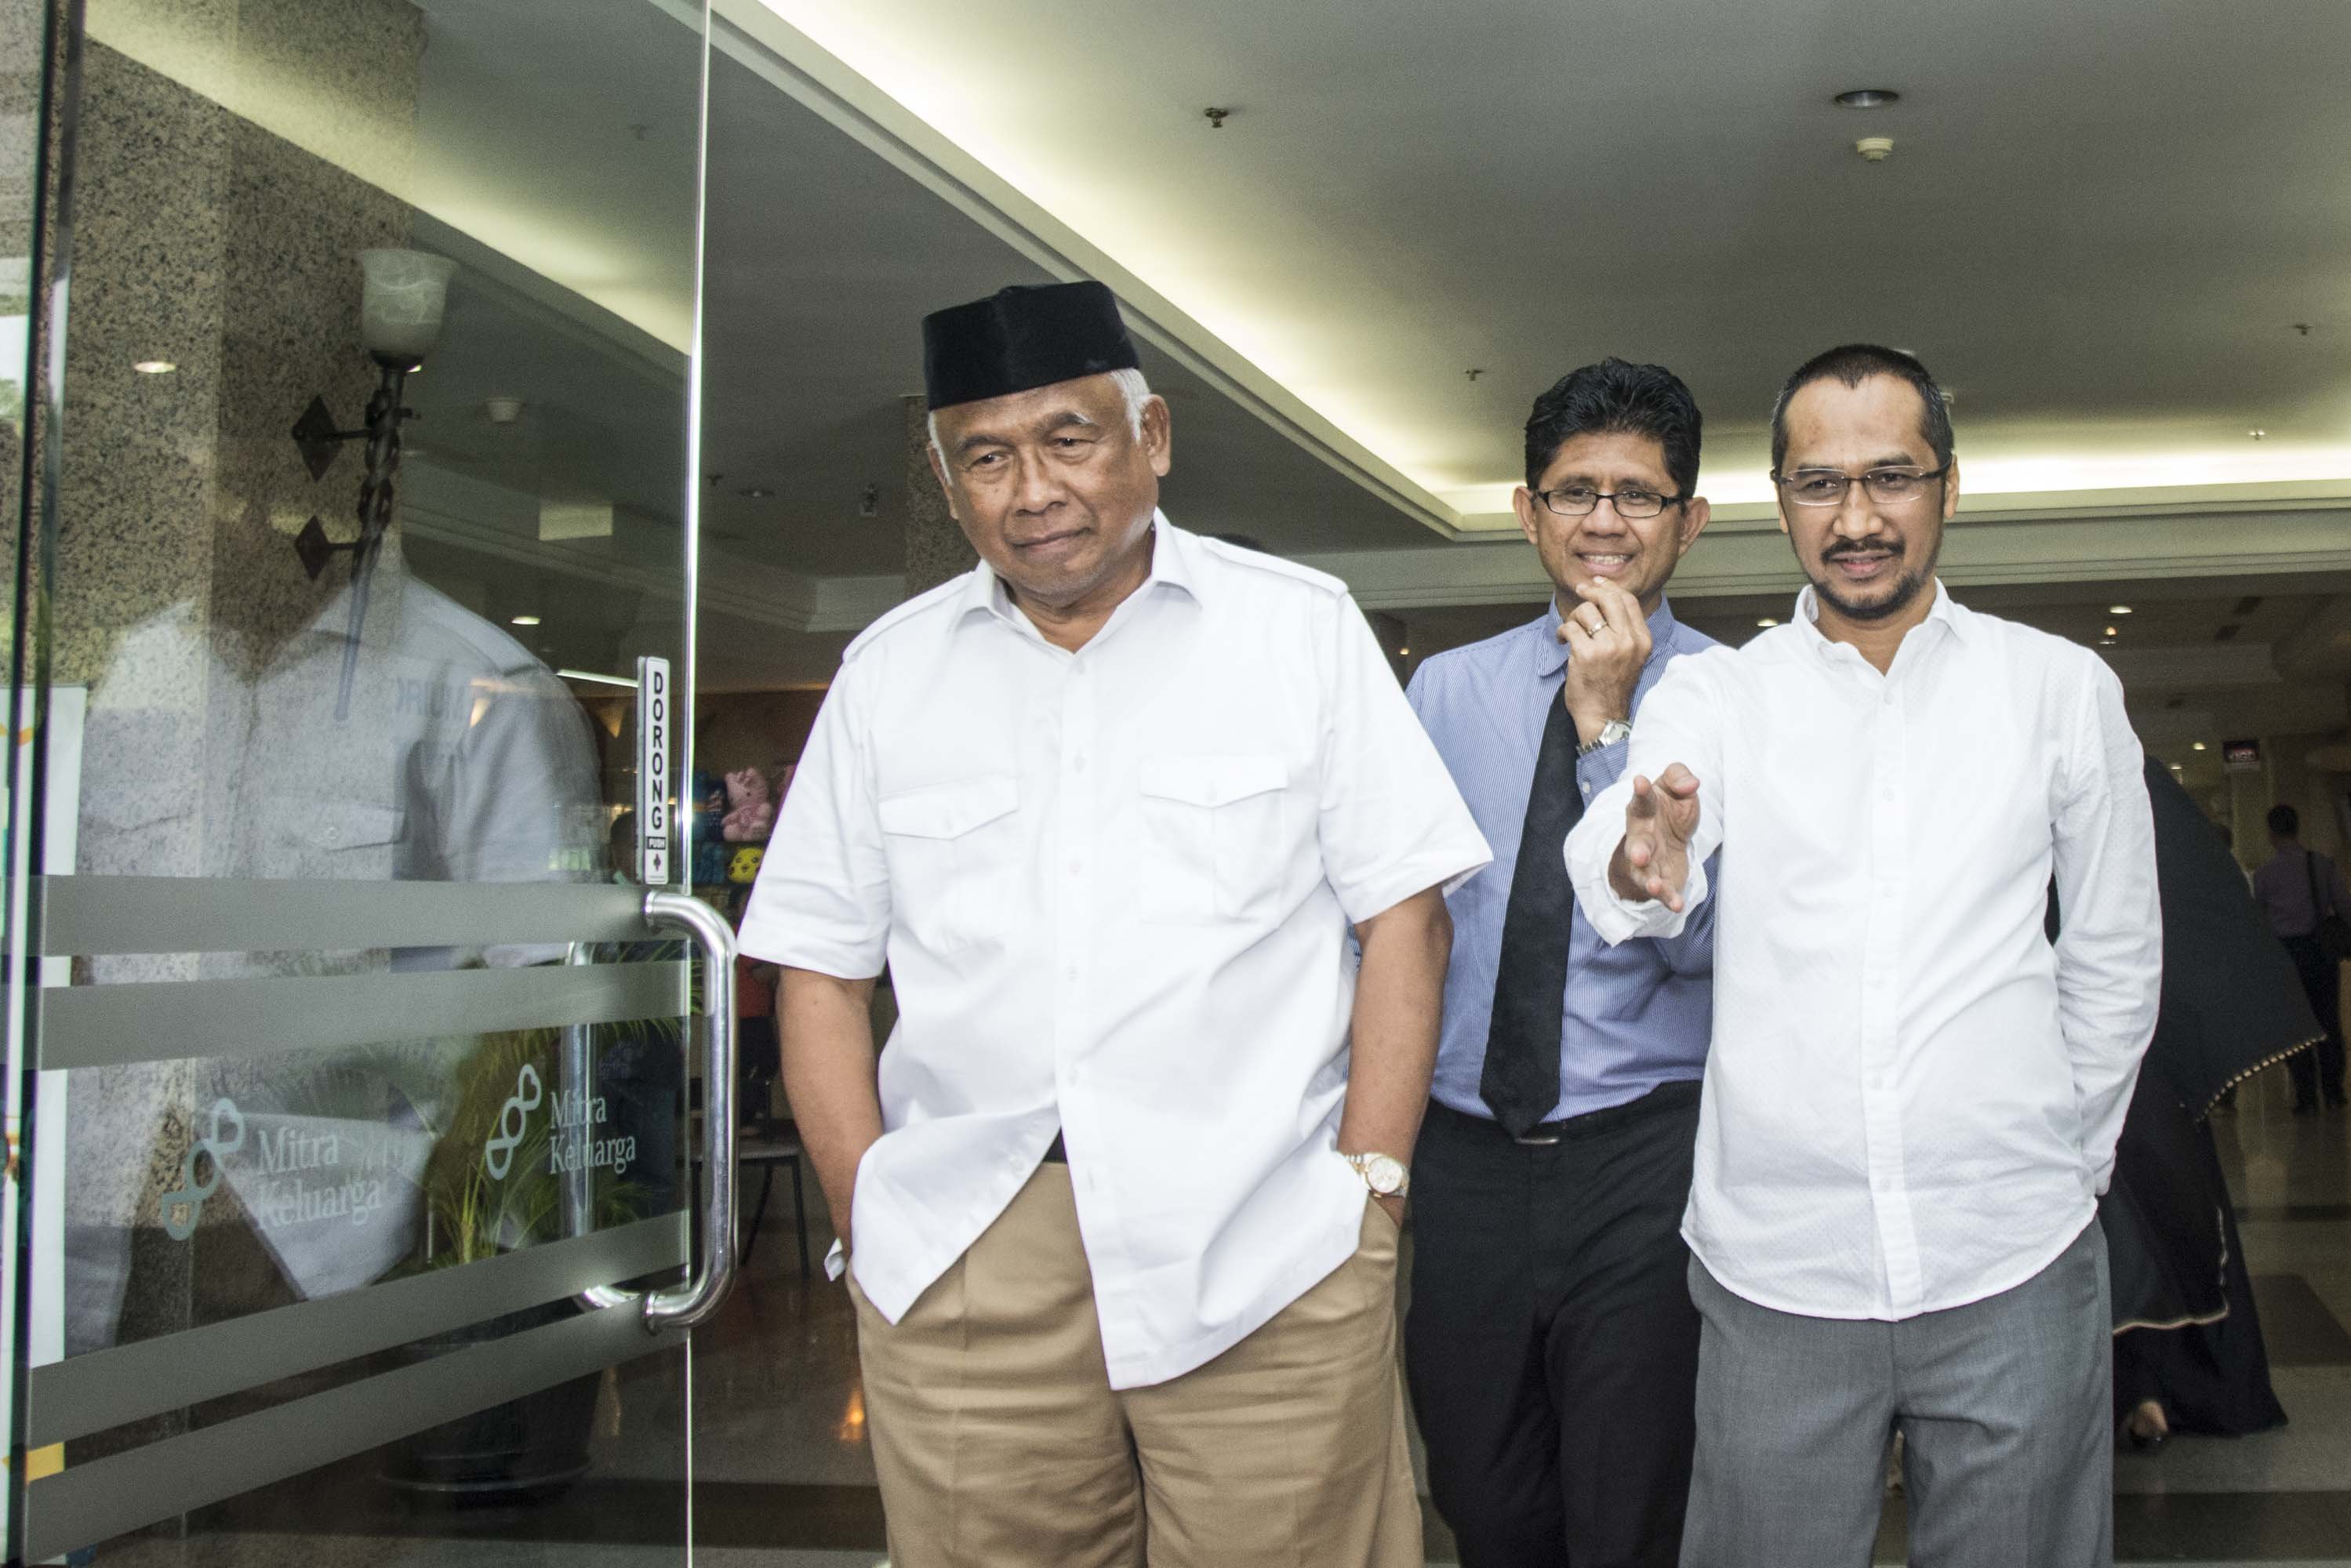 Wakil Ketua KPK Laode Muhammad Syarif (tengah) bersama mantan Ketua KPK Taufiqurrahman Ruki (kiri) dan Abraham Samad (kanan) usai menjenguk penyidik KPK Novel Baswedan di Jakarta, Selasa (11/4).